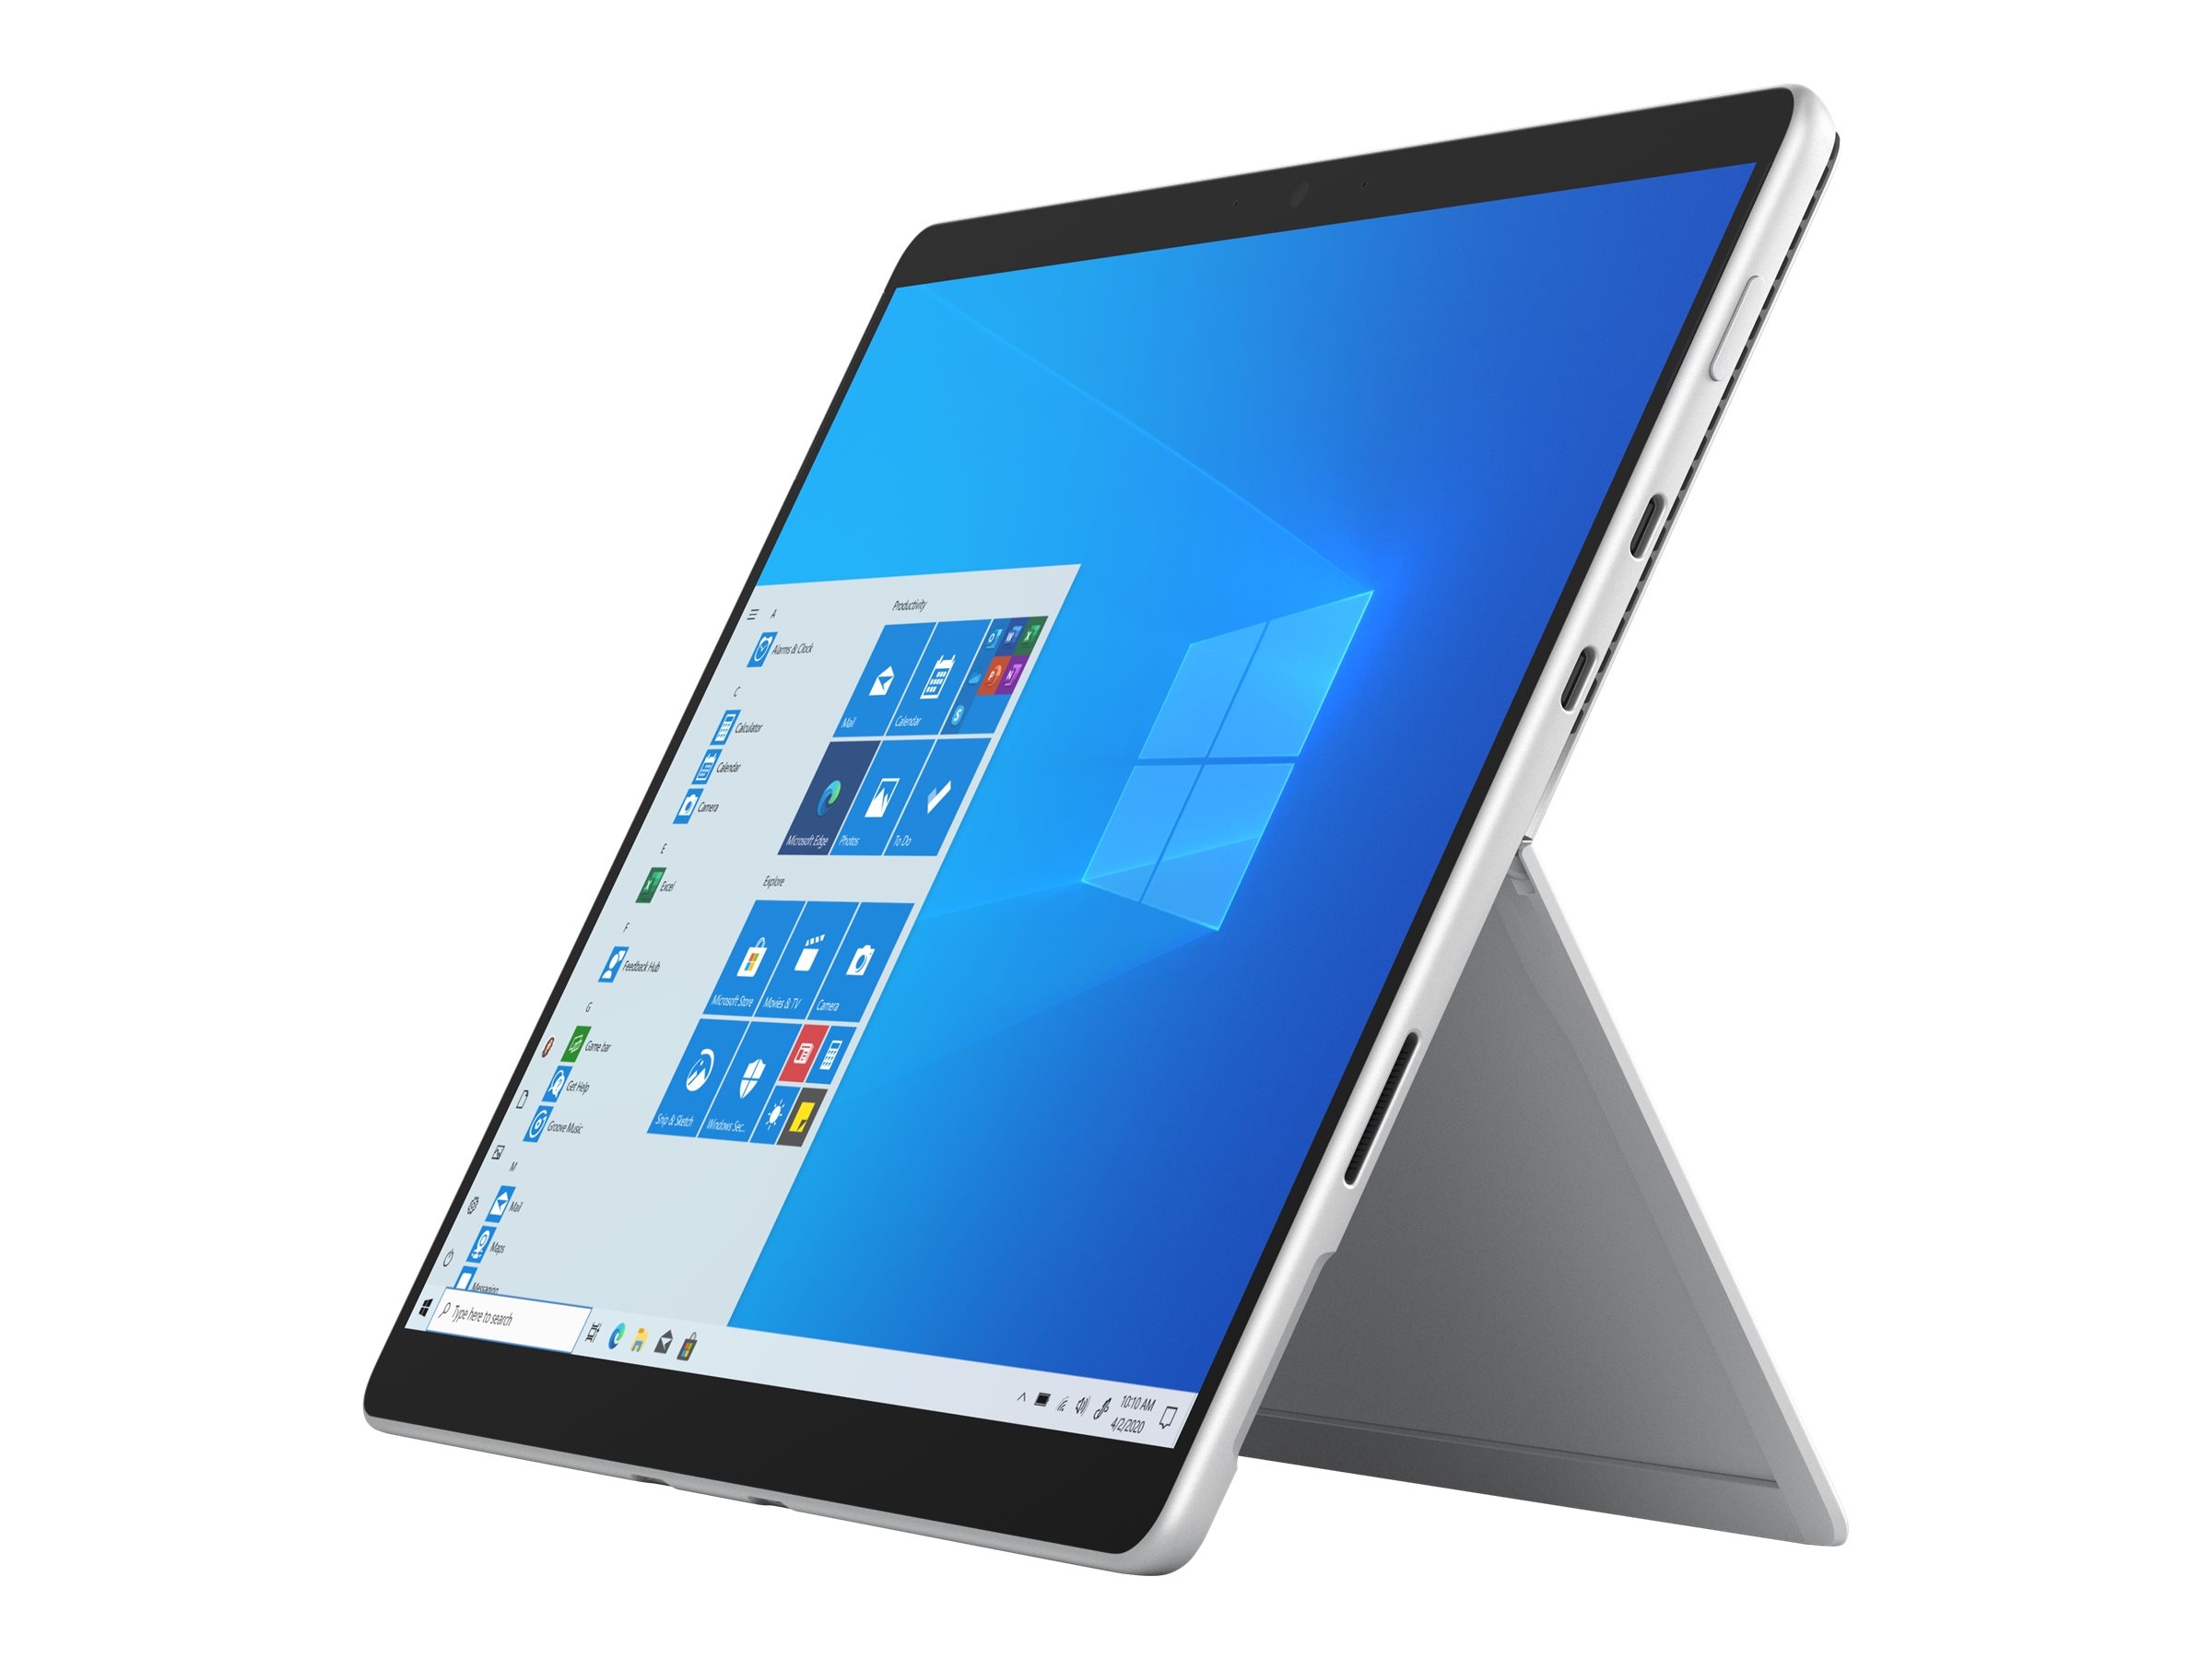 Microsoft Surface Pro 8 - Tablette - Intel Core i7 - 1185G7 / jusqu'à 4.8 GHz - Evo - Win 10 Pro - Carte graphique Intel Iris Xe - 16 Go RAM - 256 Go SSD - 13" écran tactile 2880 x 1920 @ 120 Hz - Wi-Fi 6 - 4G LTE-A - platine - commercial - EIV-00020 - Ordinateurs portables